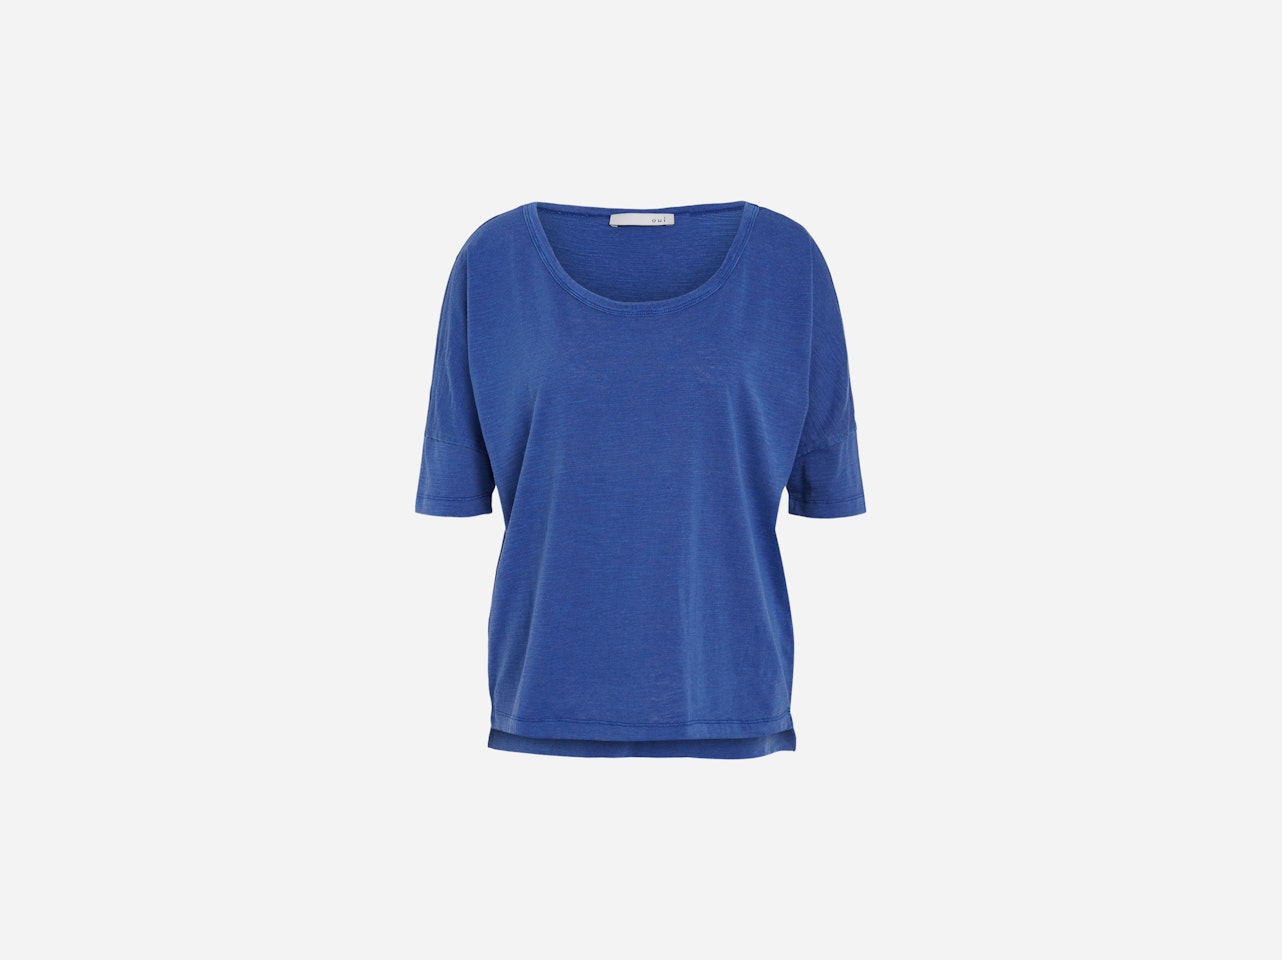 Bild 7 von T-shirt in washed out look in mazarine blue | Oui